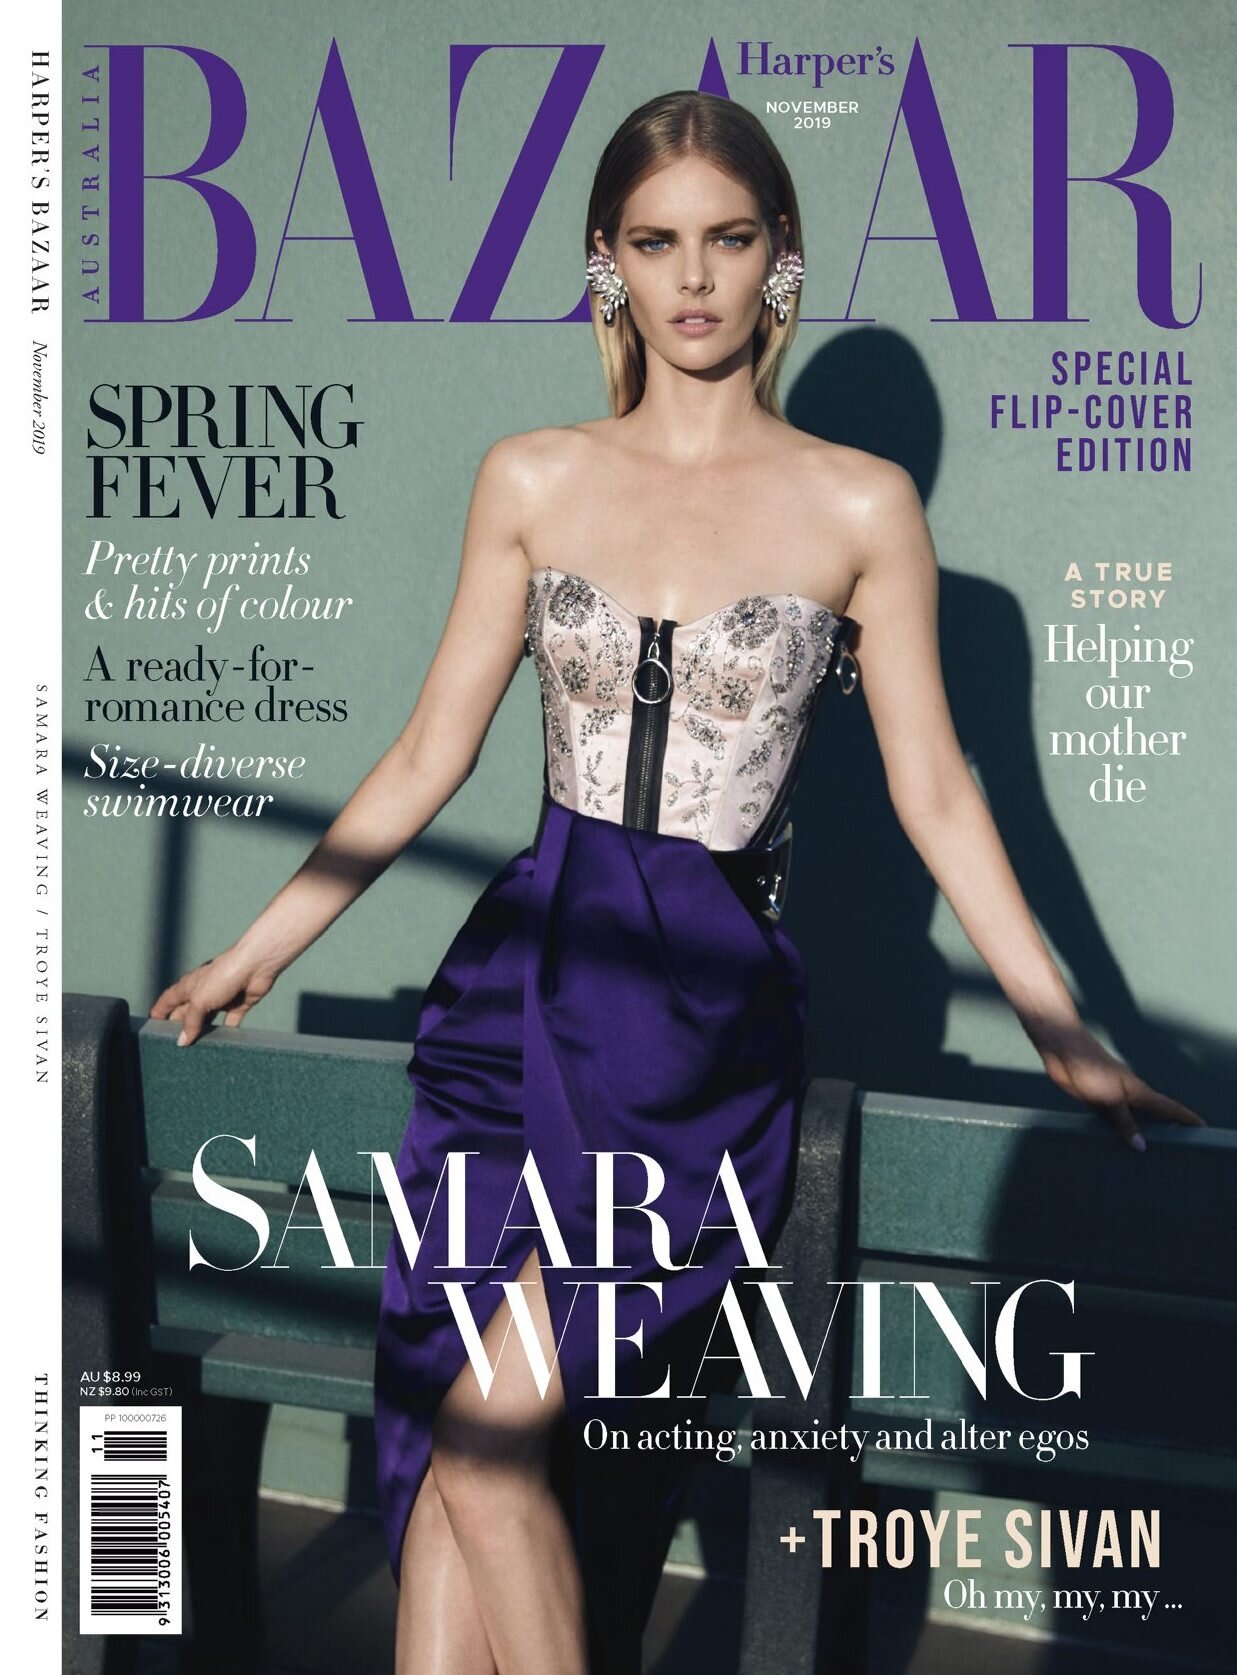 Harper's Bazaar, November 2019